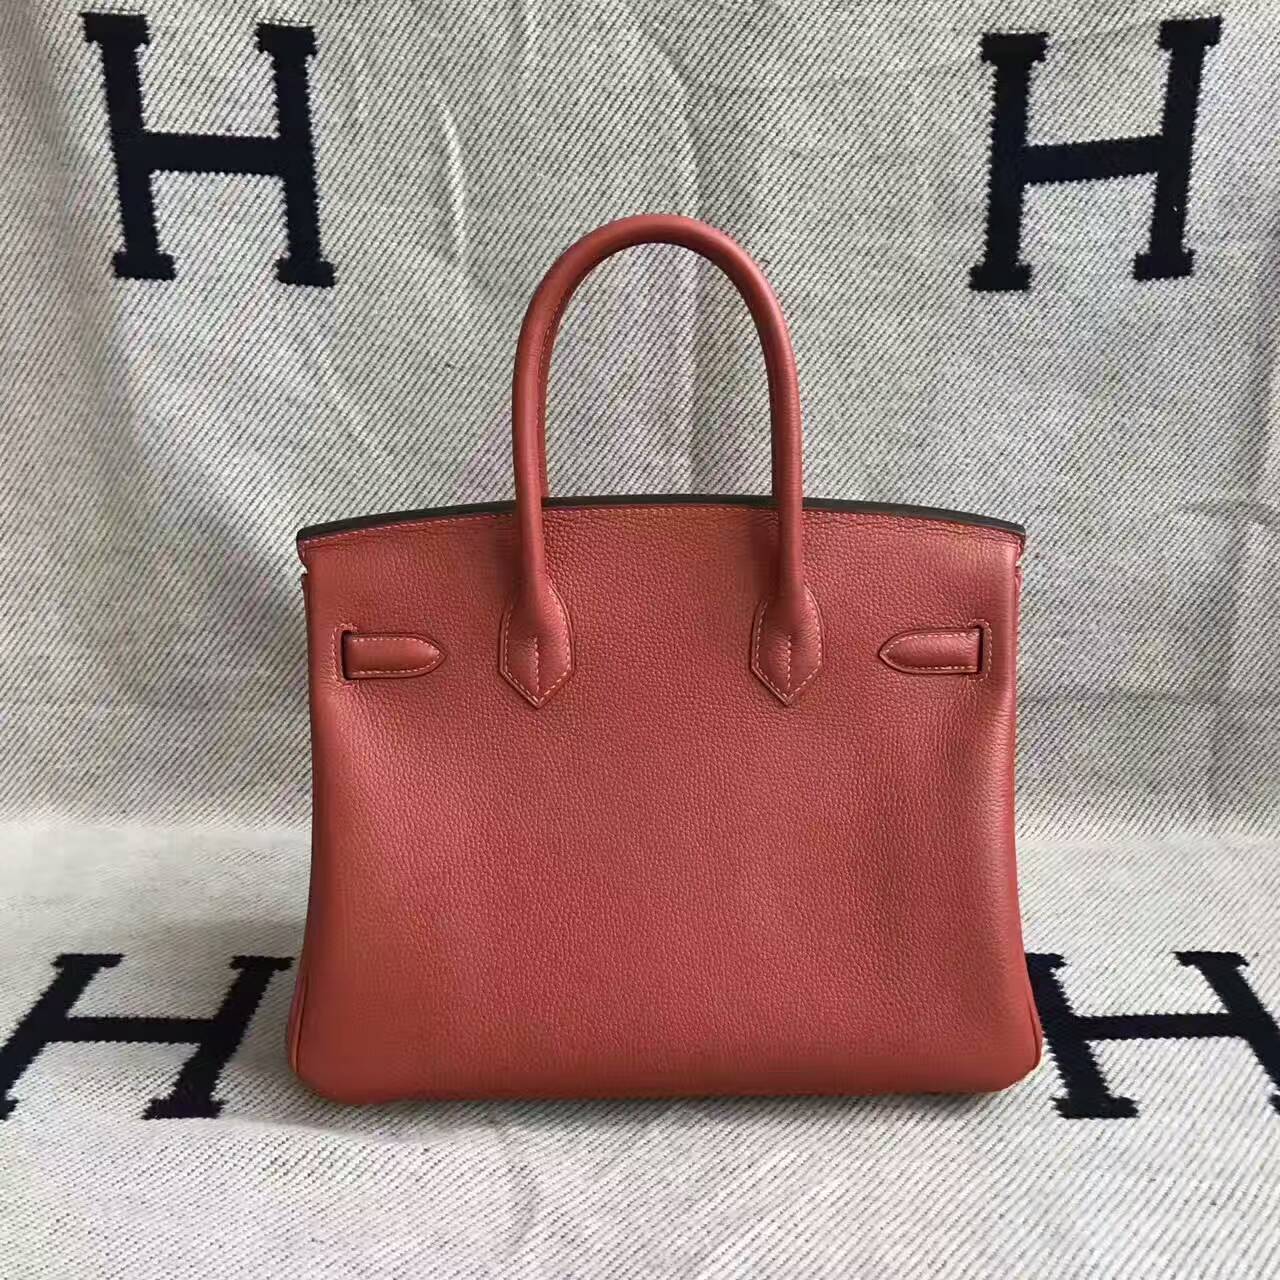 Discount Hermes 6C Cuivre Togo Calfskin Leather Birkin Bag 30cm